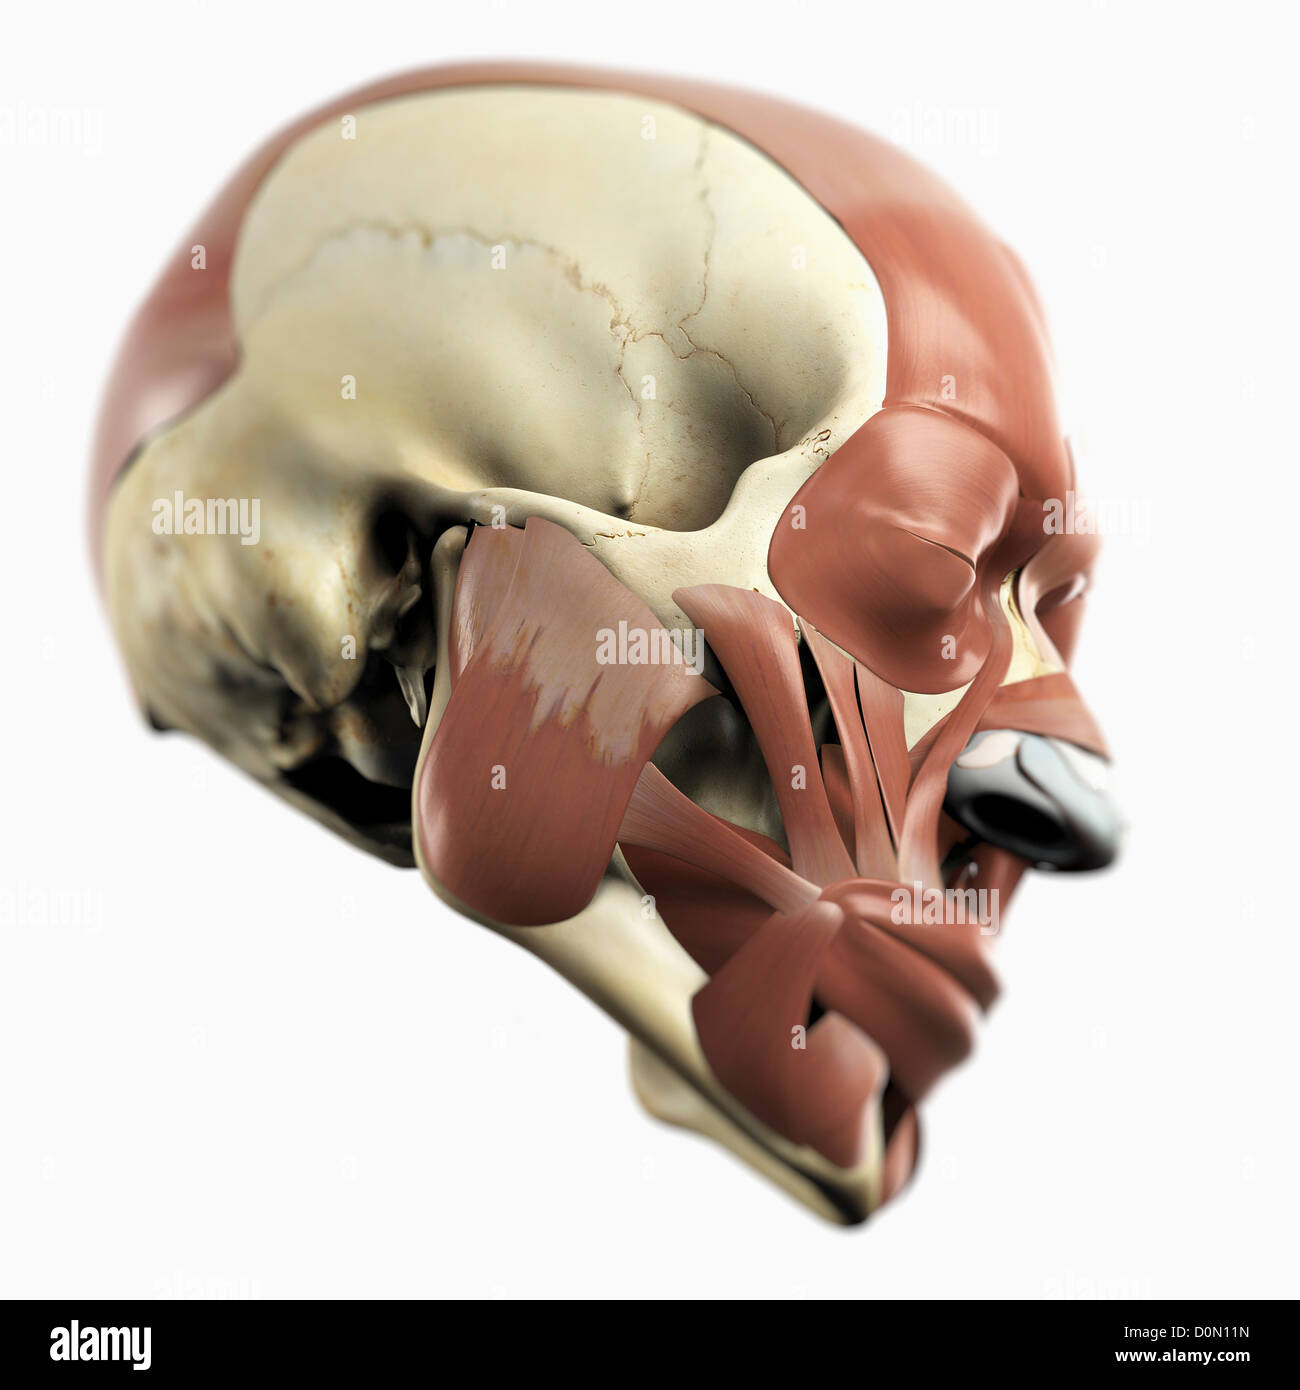 Modèle anatomique montrant les muscles du visage. Banque D'Images